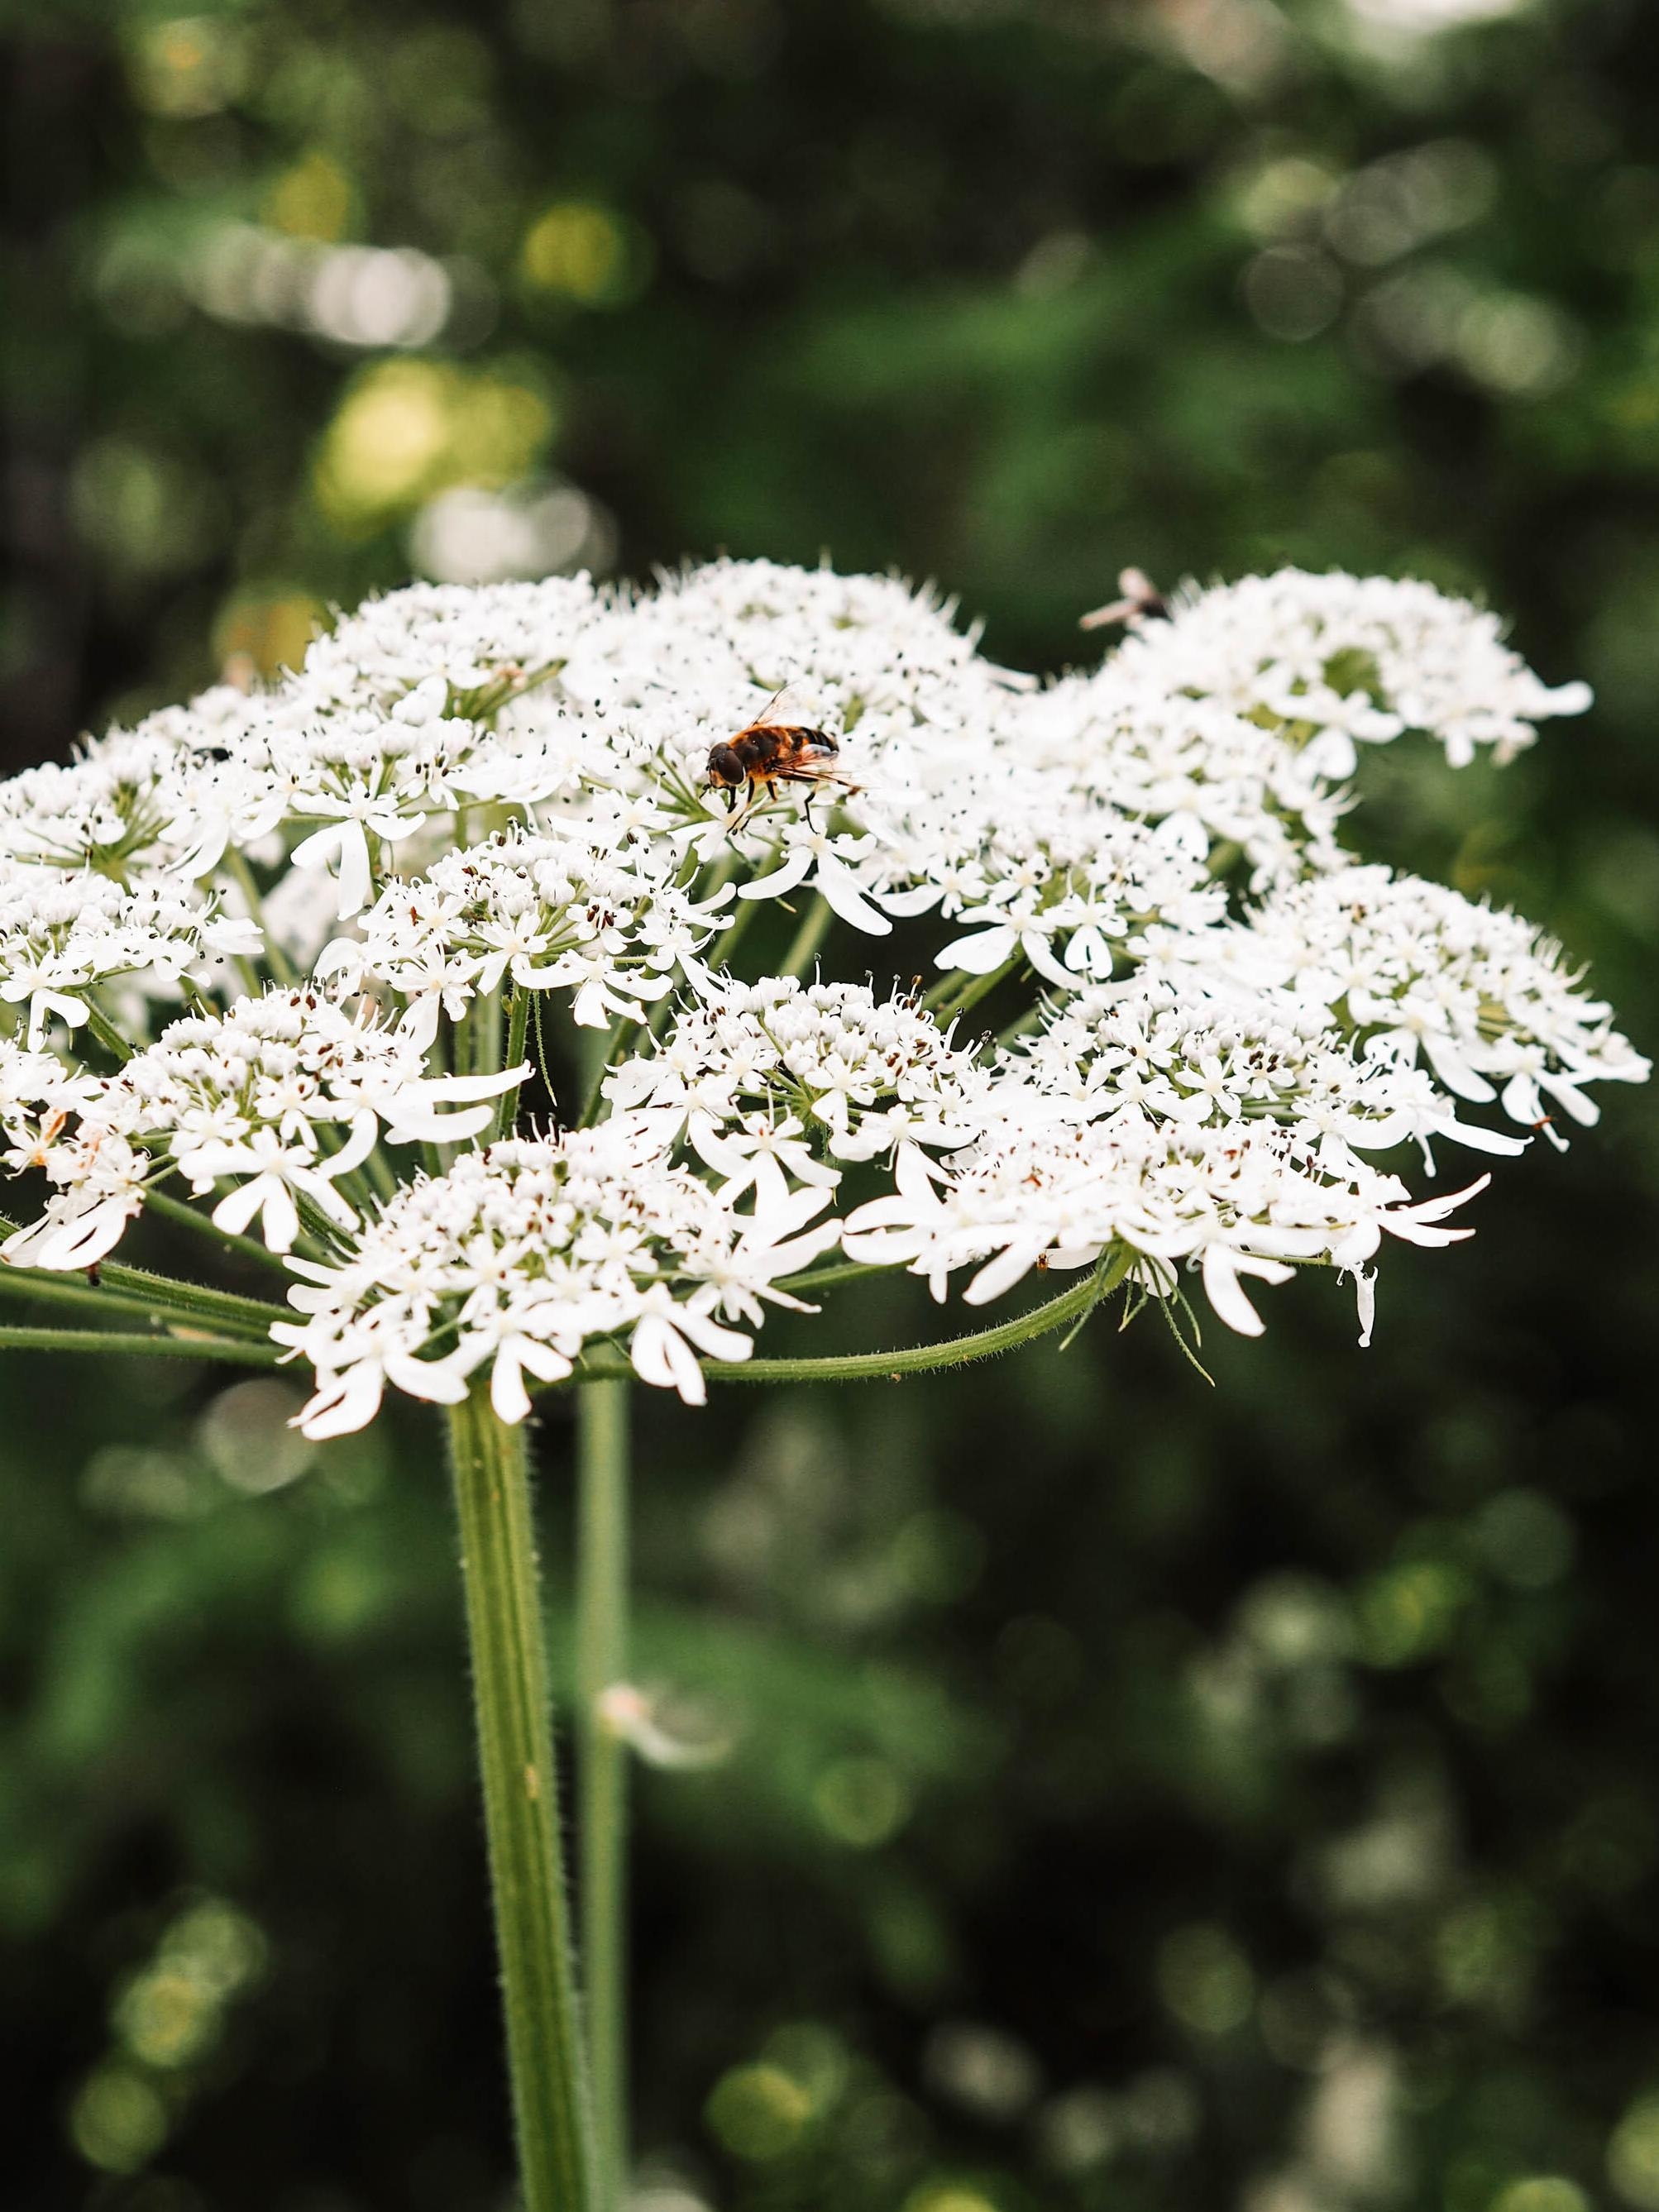 #gartenliebe ist...wenn man den Bienen beim Summen zuhören und Insekten beobachten kann. #outdoorweek